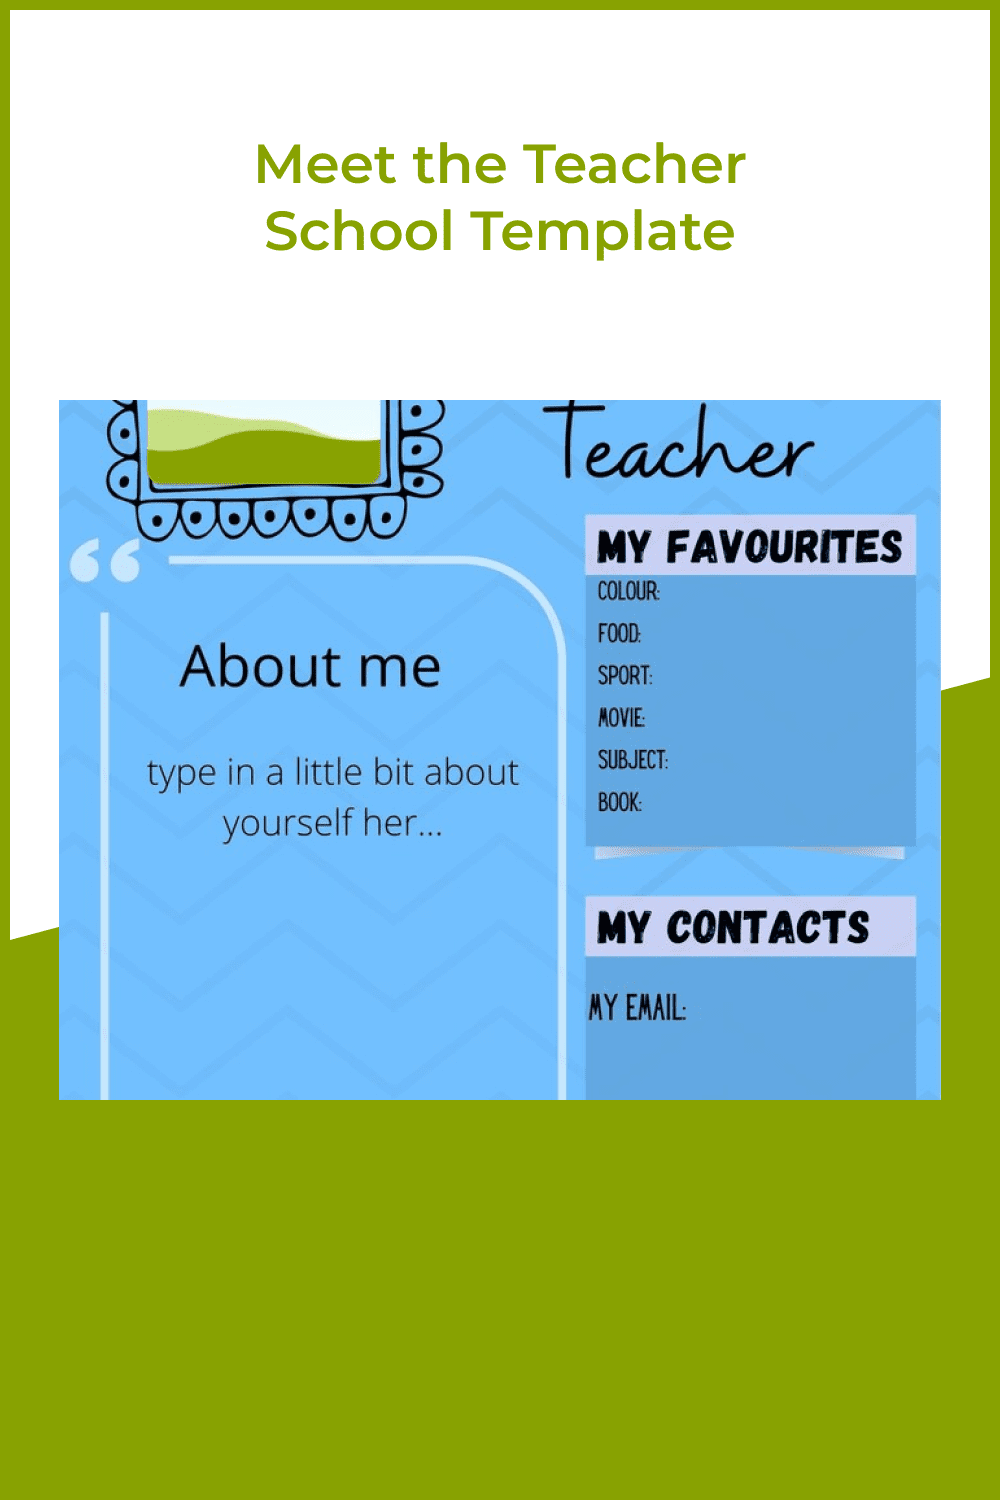 Meet the teacher school template.